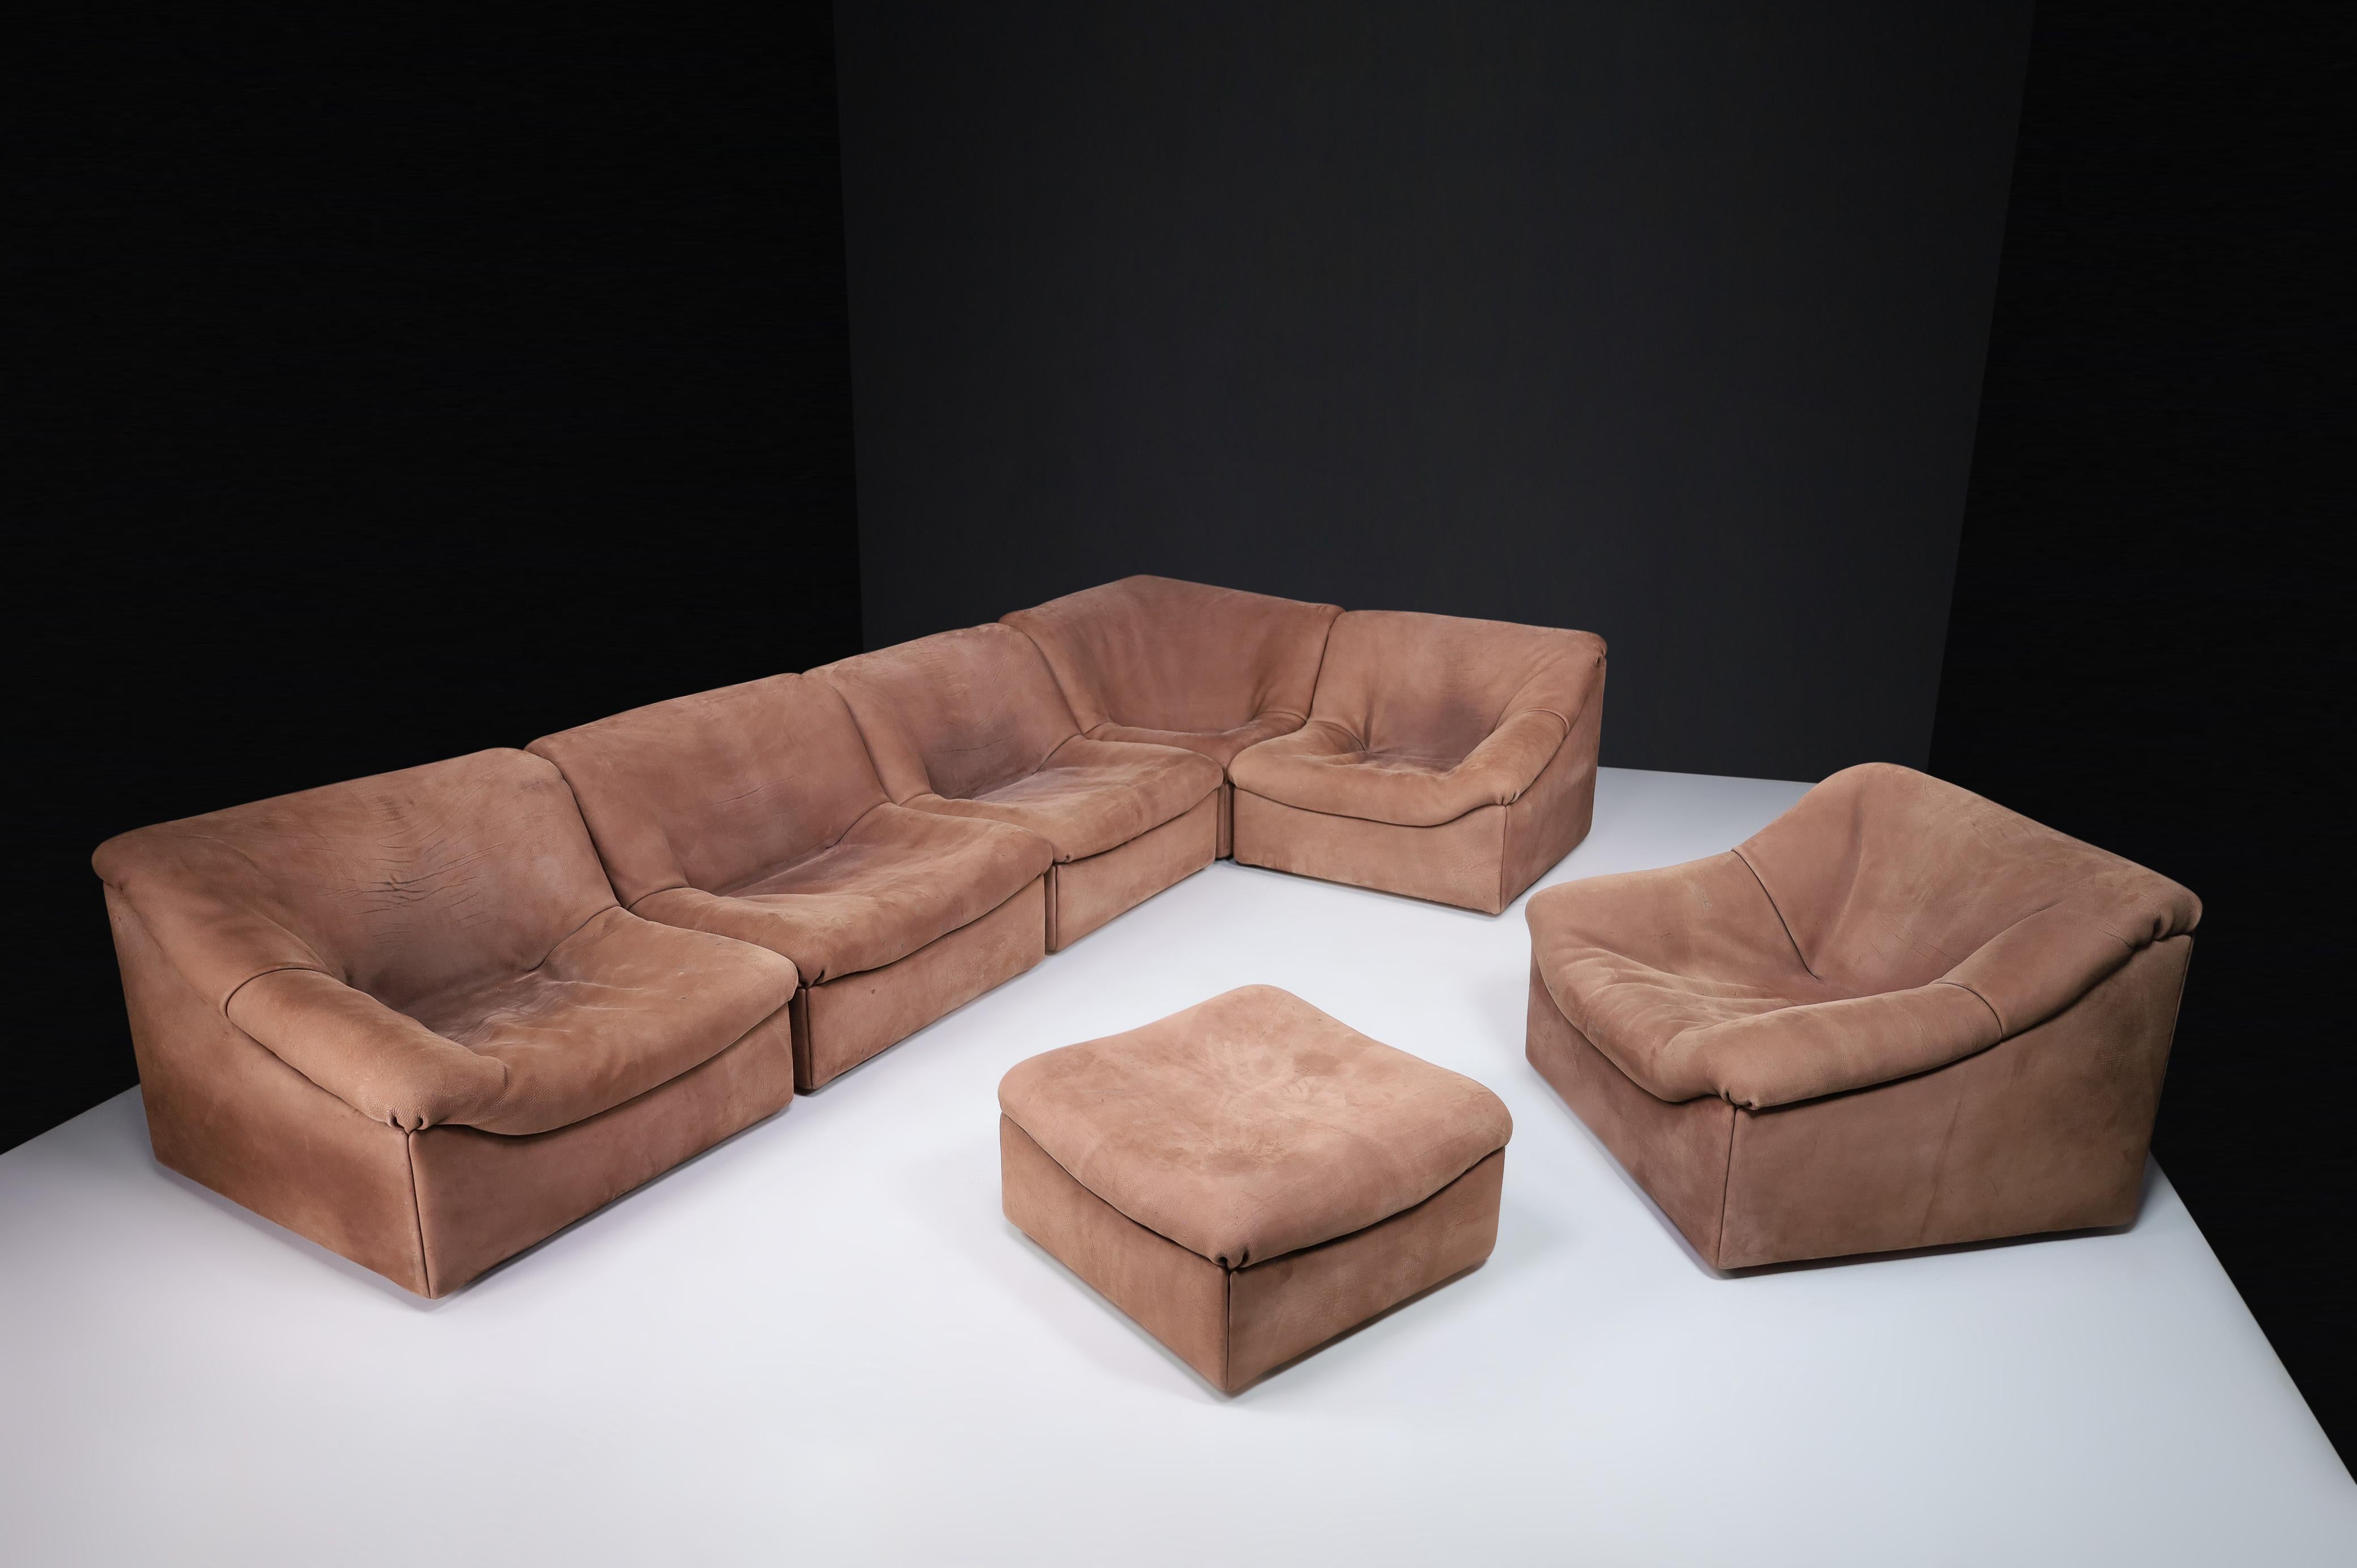 De Sede DS46 Ensemble canapé-living en cuir de buffle fort, Suisse 1970

Les éléments DS46 de De Sede sont parfaits pour créer un canapé d'angle, une chaise et un ottoman en cuir de qualité supérieure, au design minimaliste et moderne, avec une